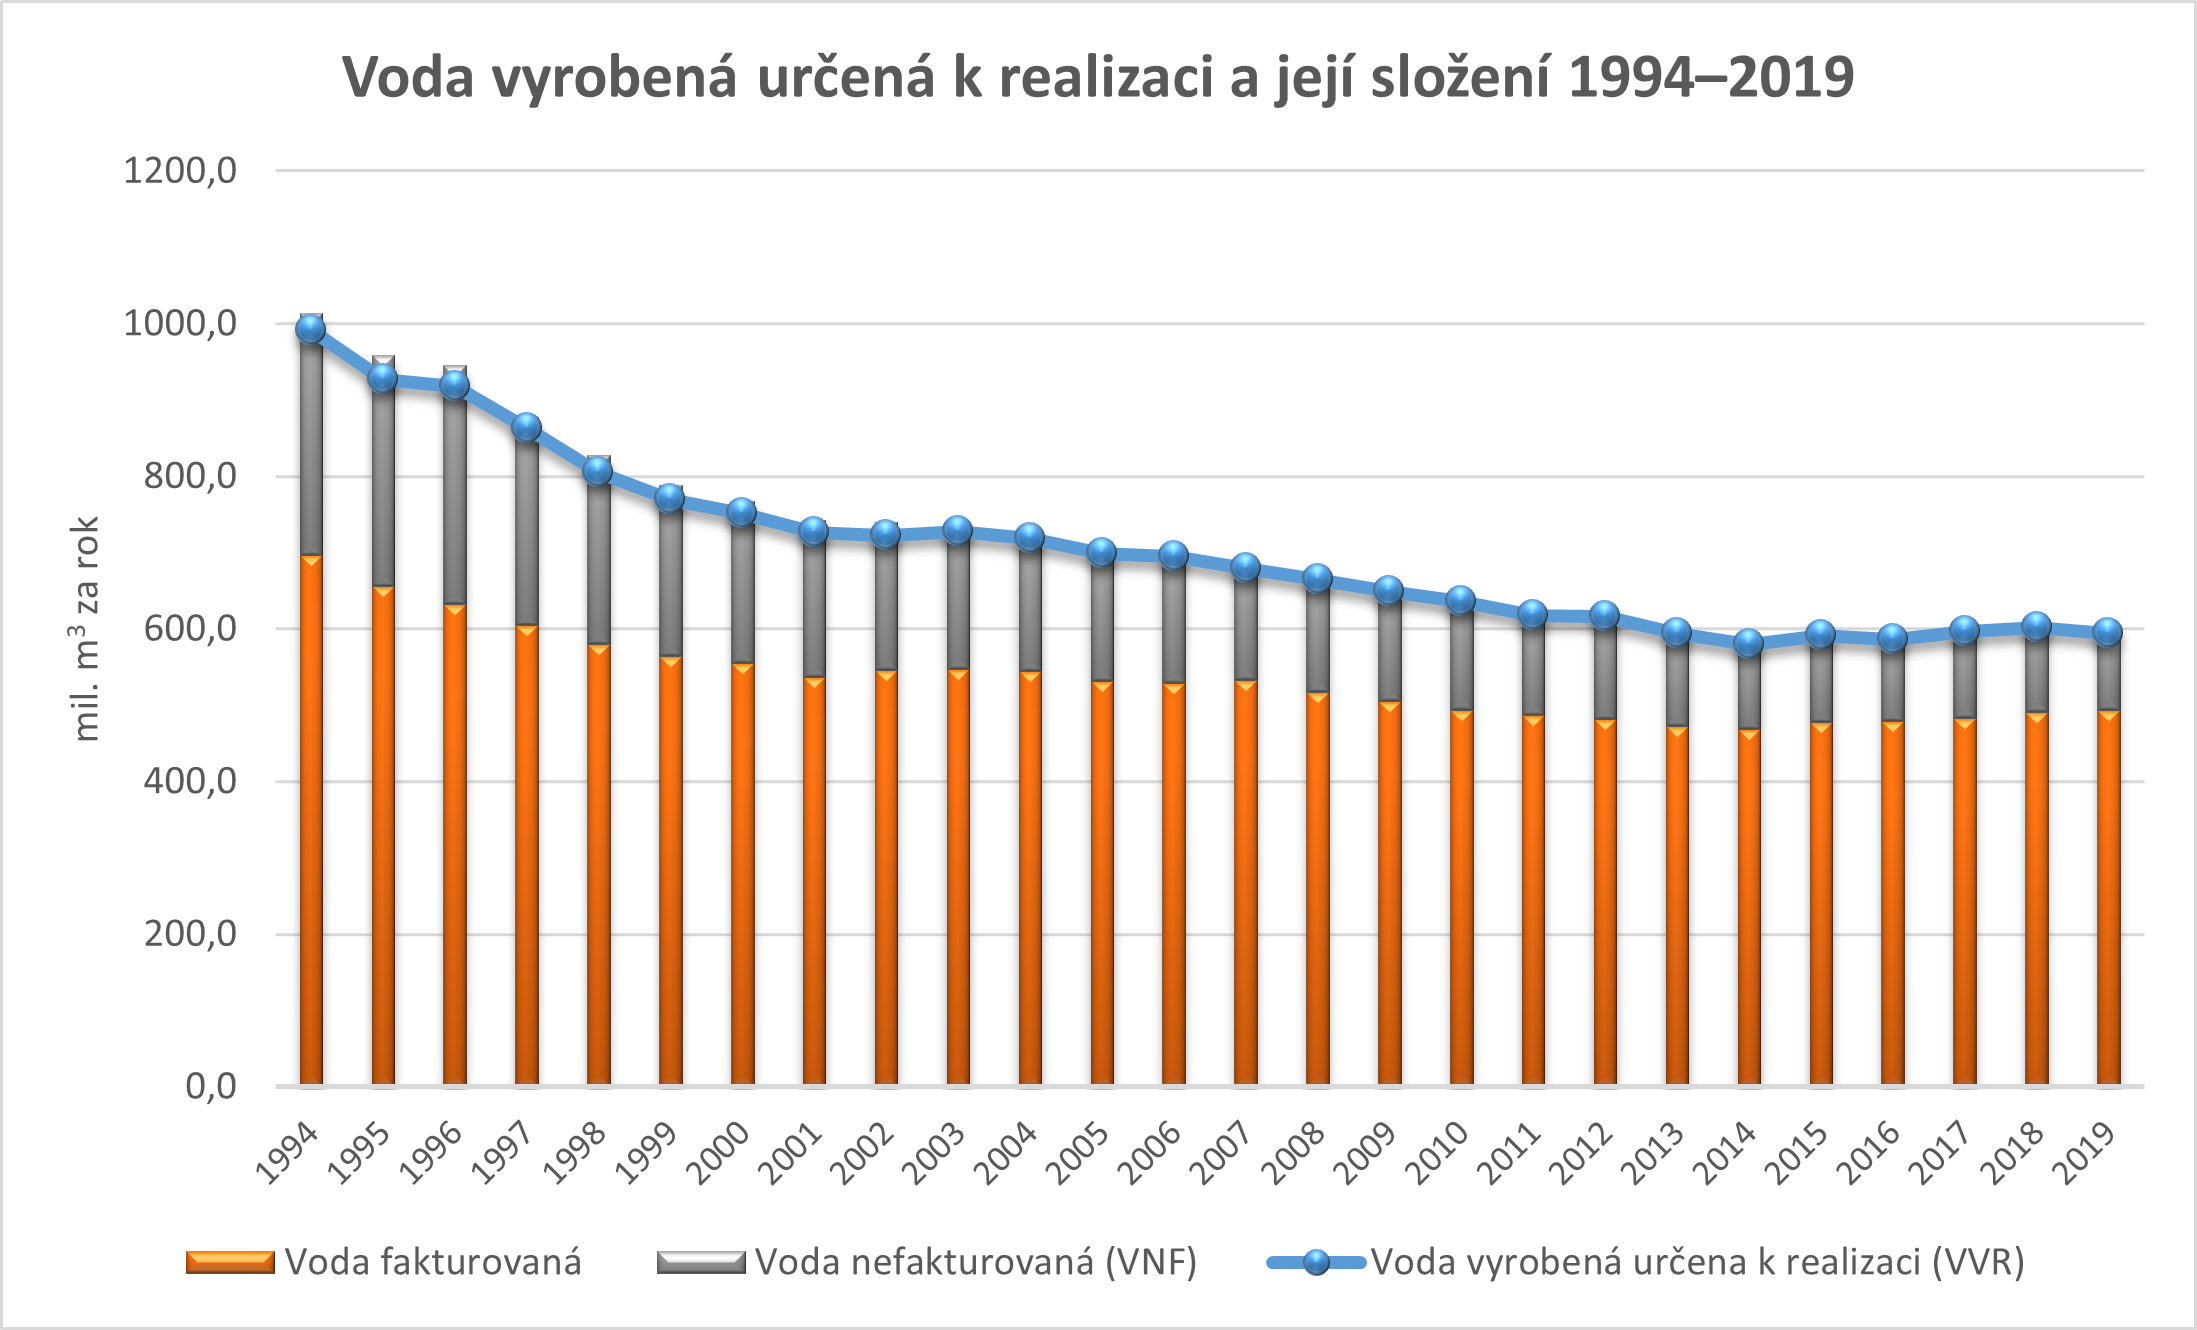 Voda vyrobená určená k realizaci a její složení 1994-2019, zdroj SOVAK ČR